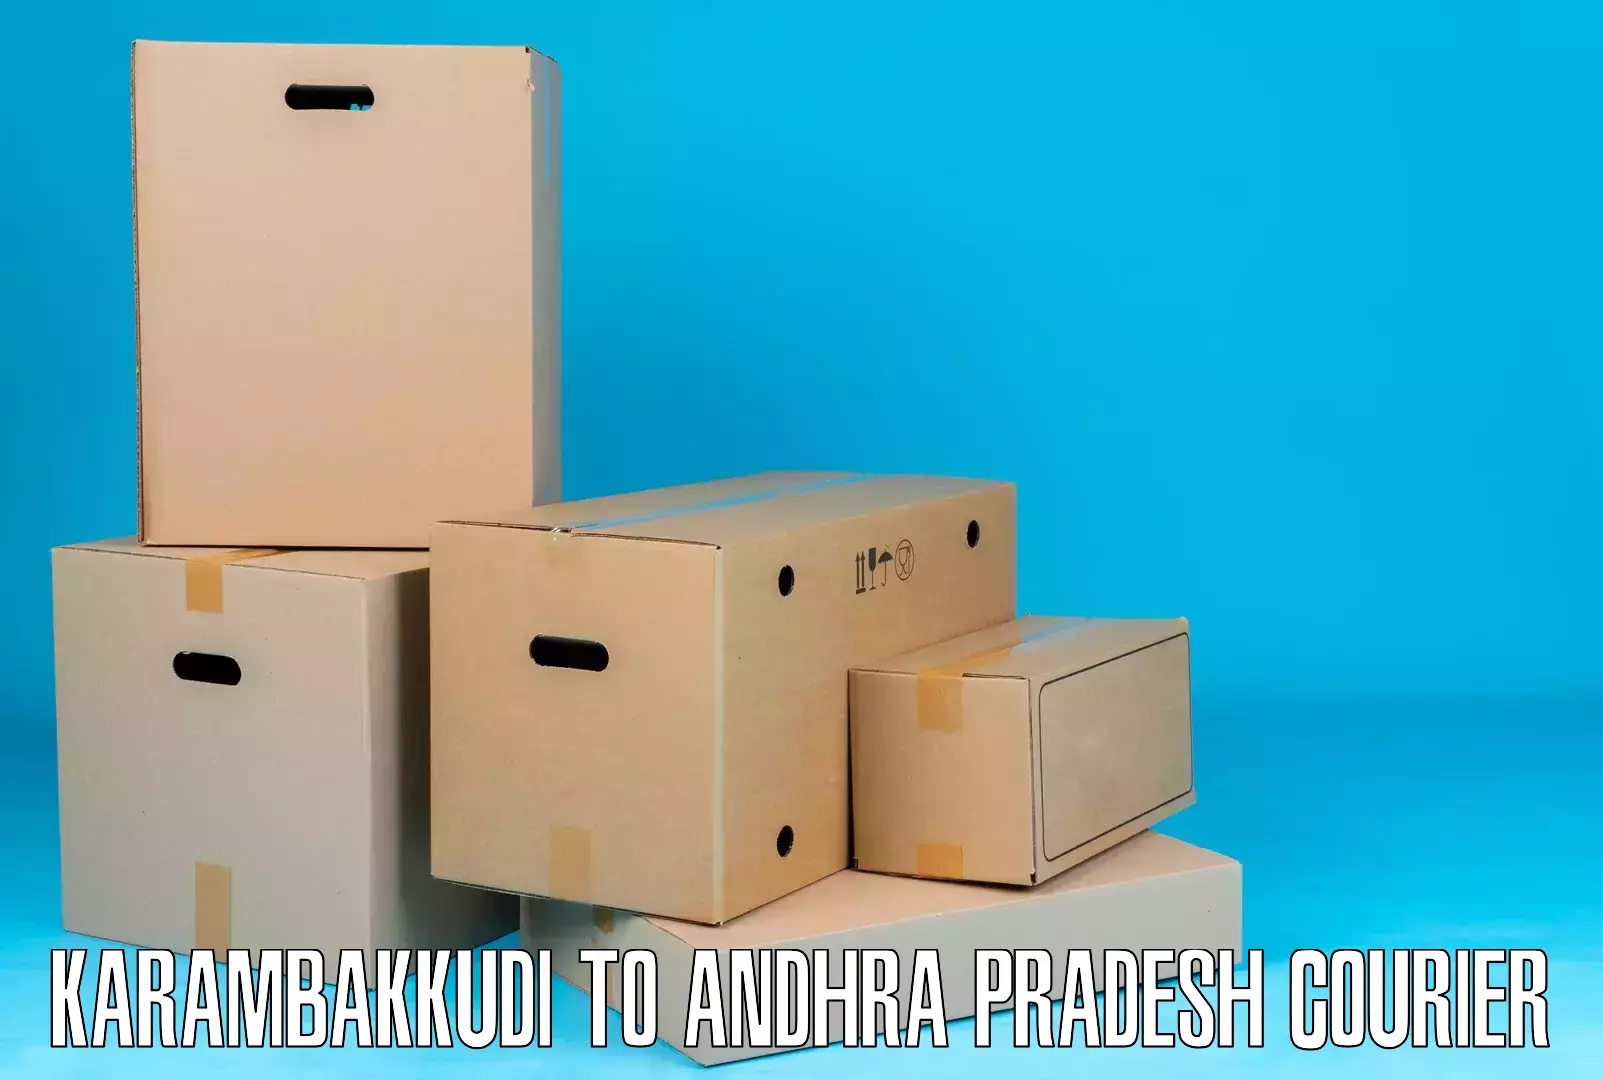 Modern delivery technologies Karambakkudi to Andhra Pradesh